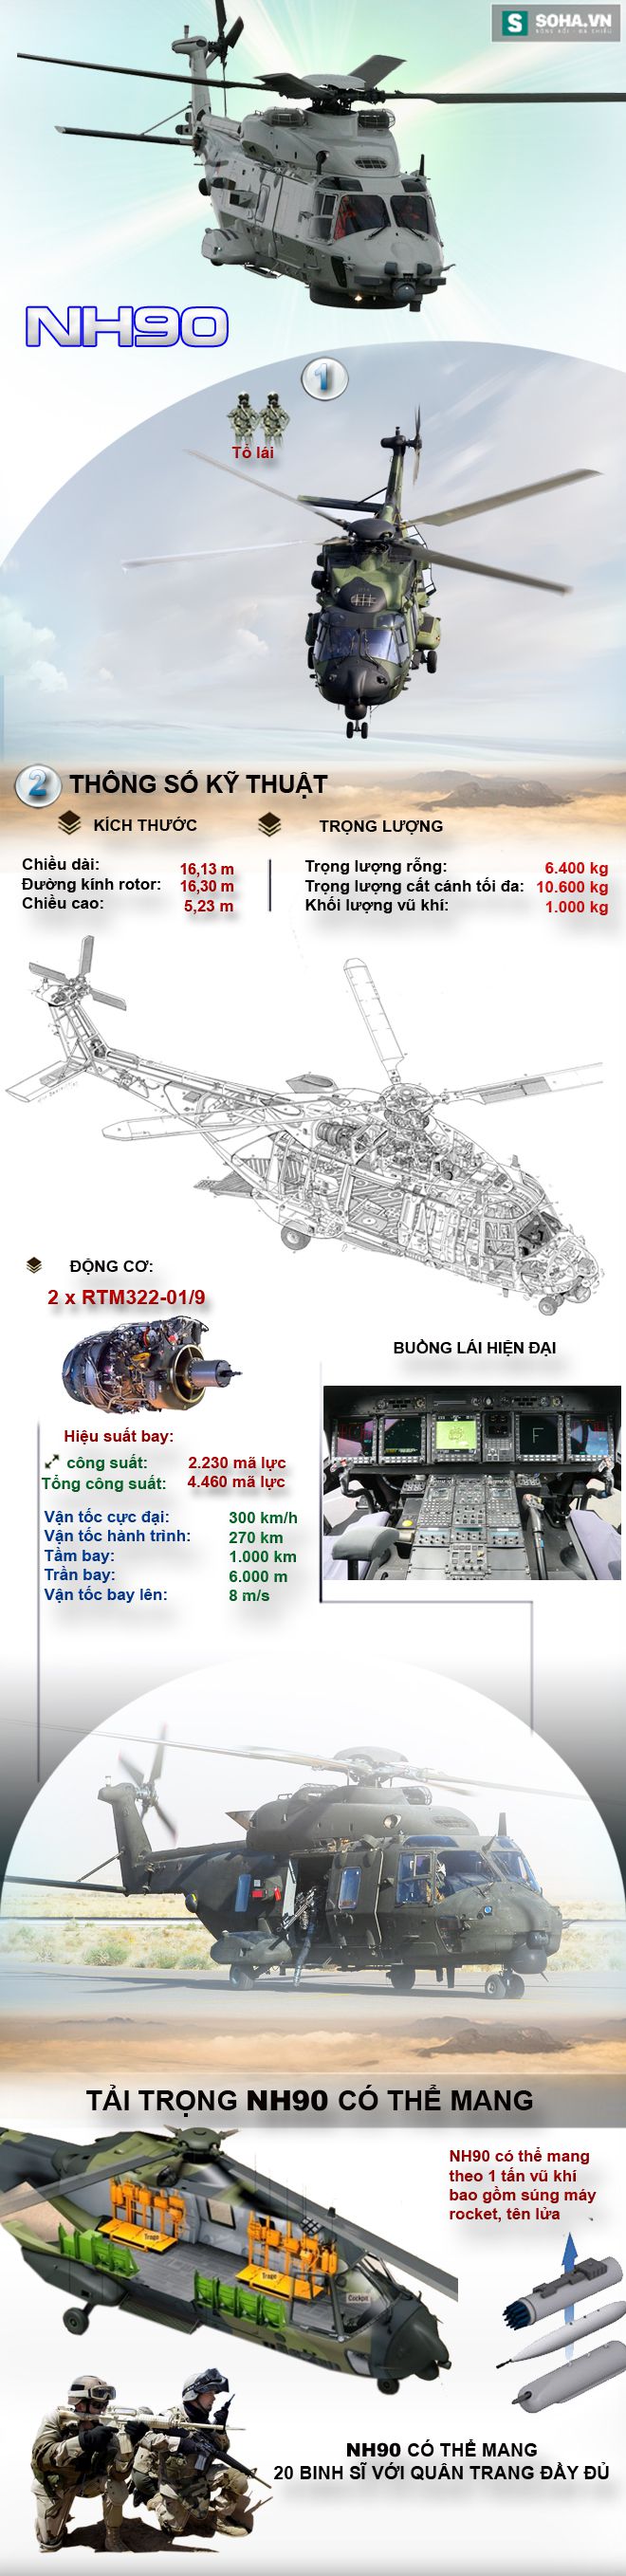 Khám phá sức mạnh trực thăng đa dụng tối tân nhất châu Âu - Ảnh 1.